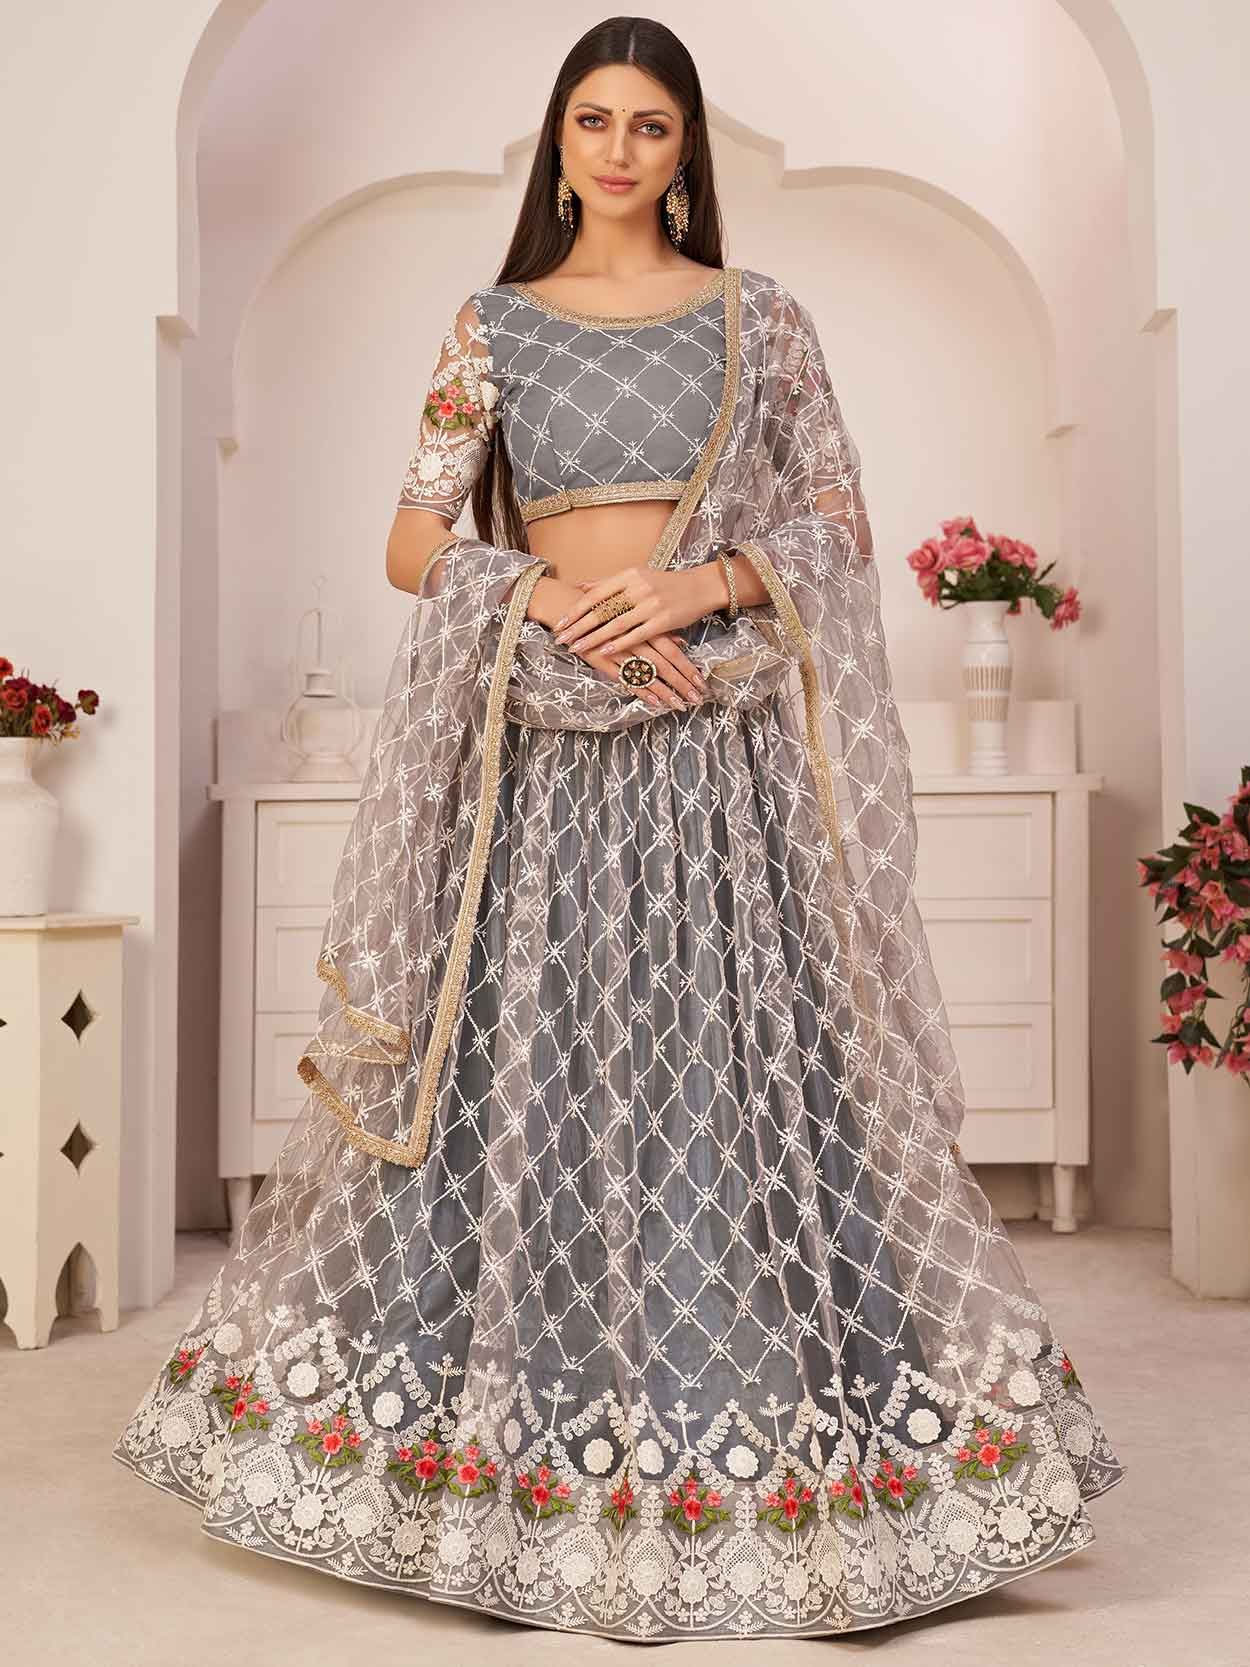 soft net bridal lehenga choli online shopping in india -9171108841 |  Heenastyle